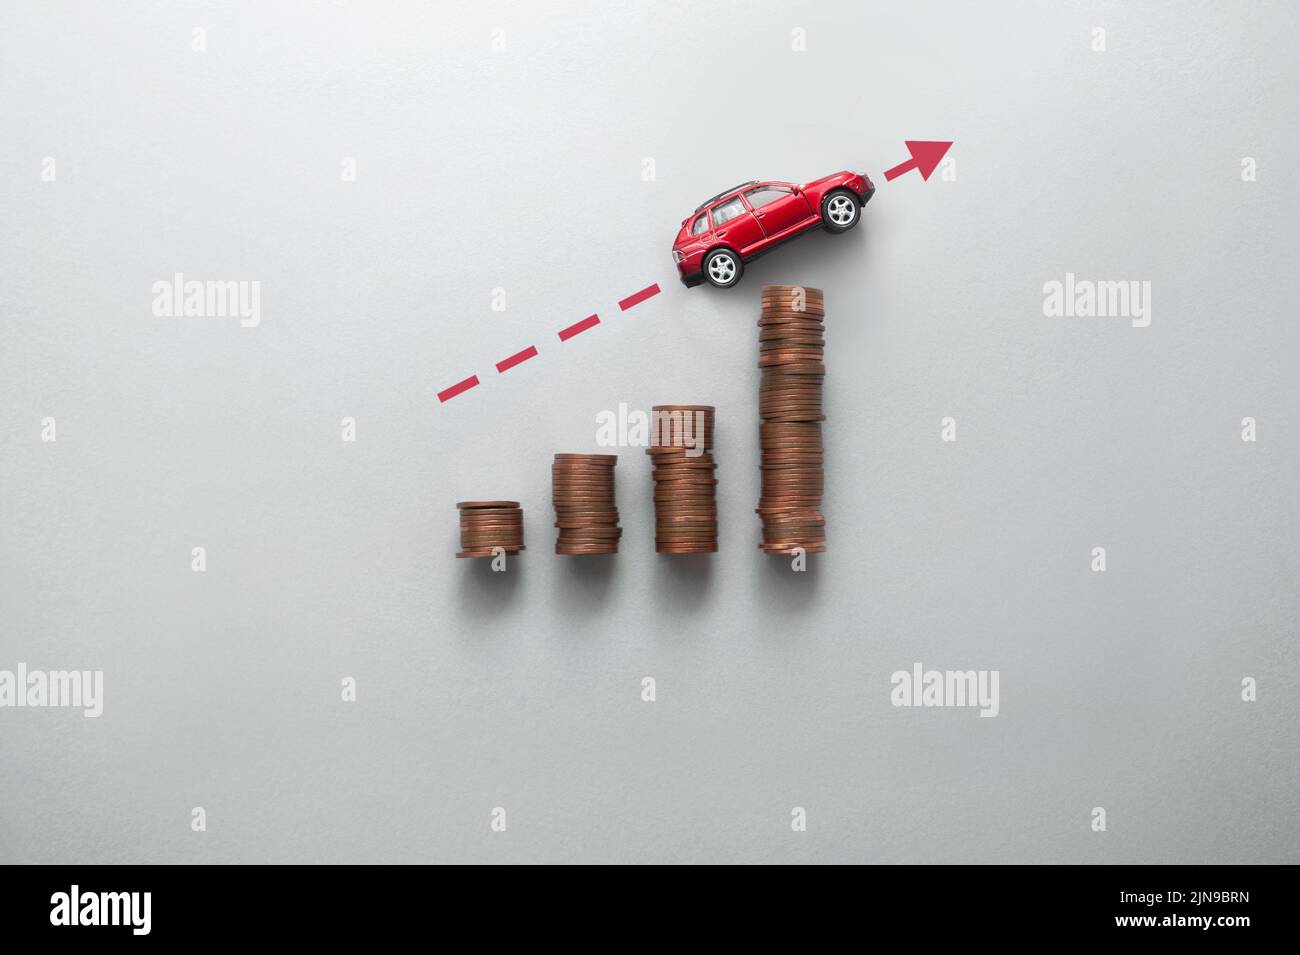 Steigender Benzinpreis-Konzept, Business-Chart-Stapel von Münzen mit Spielzeugauto bewegt sich nach oben Stockfoto